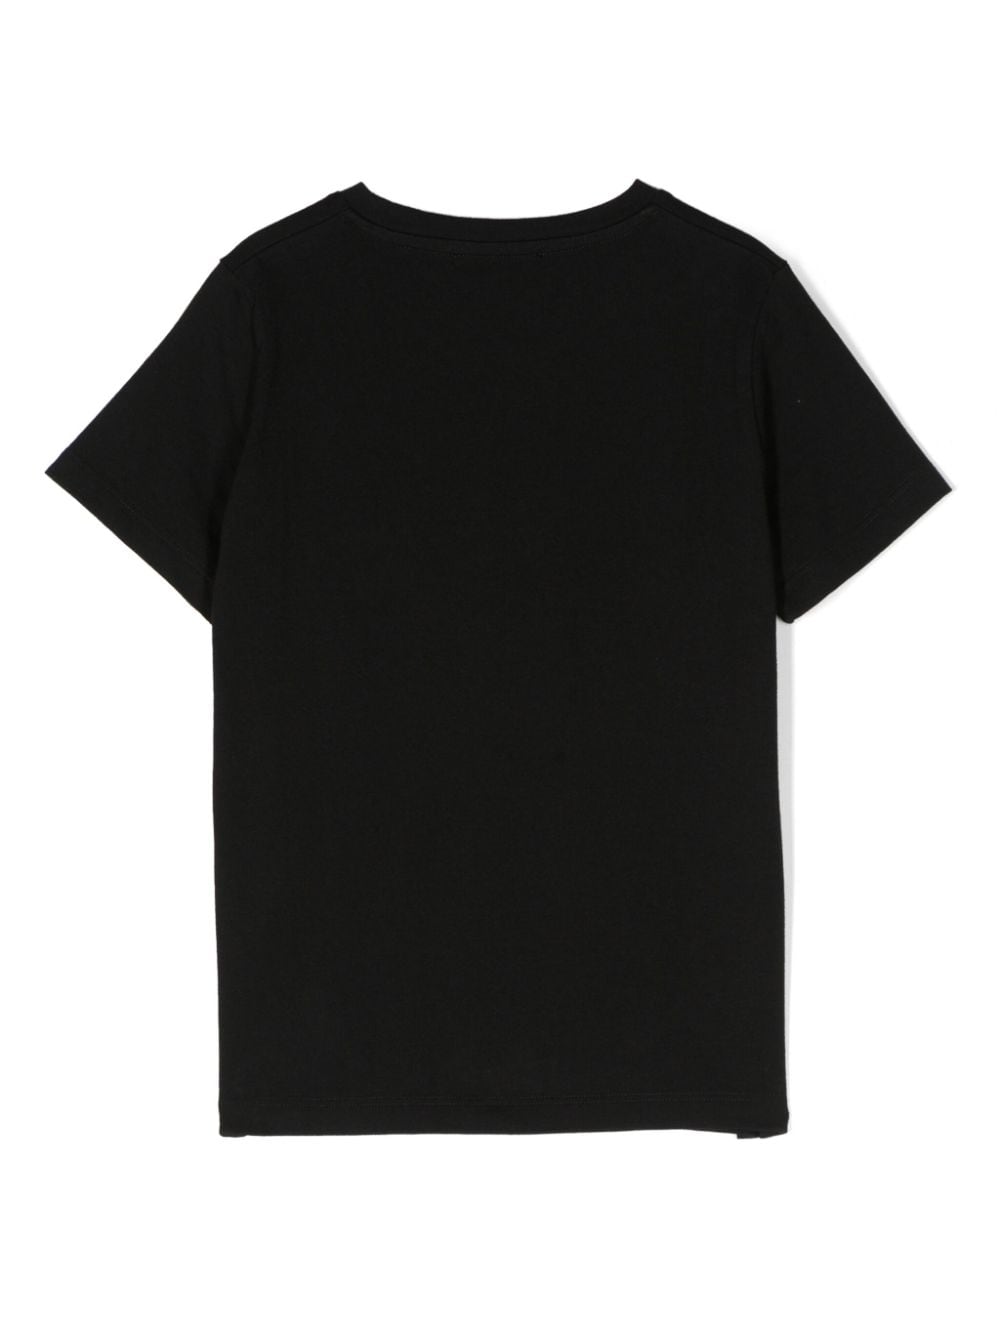 T-shirt nera unisex con stampa